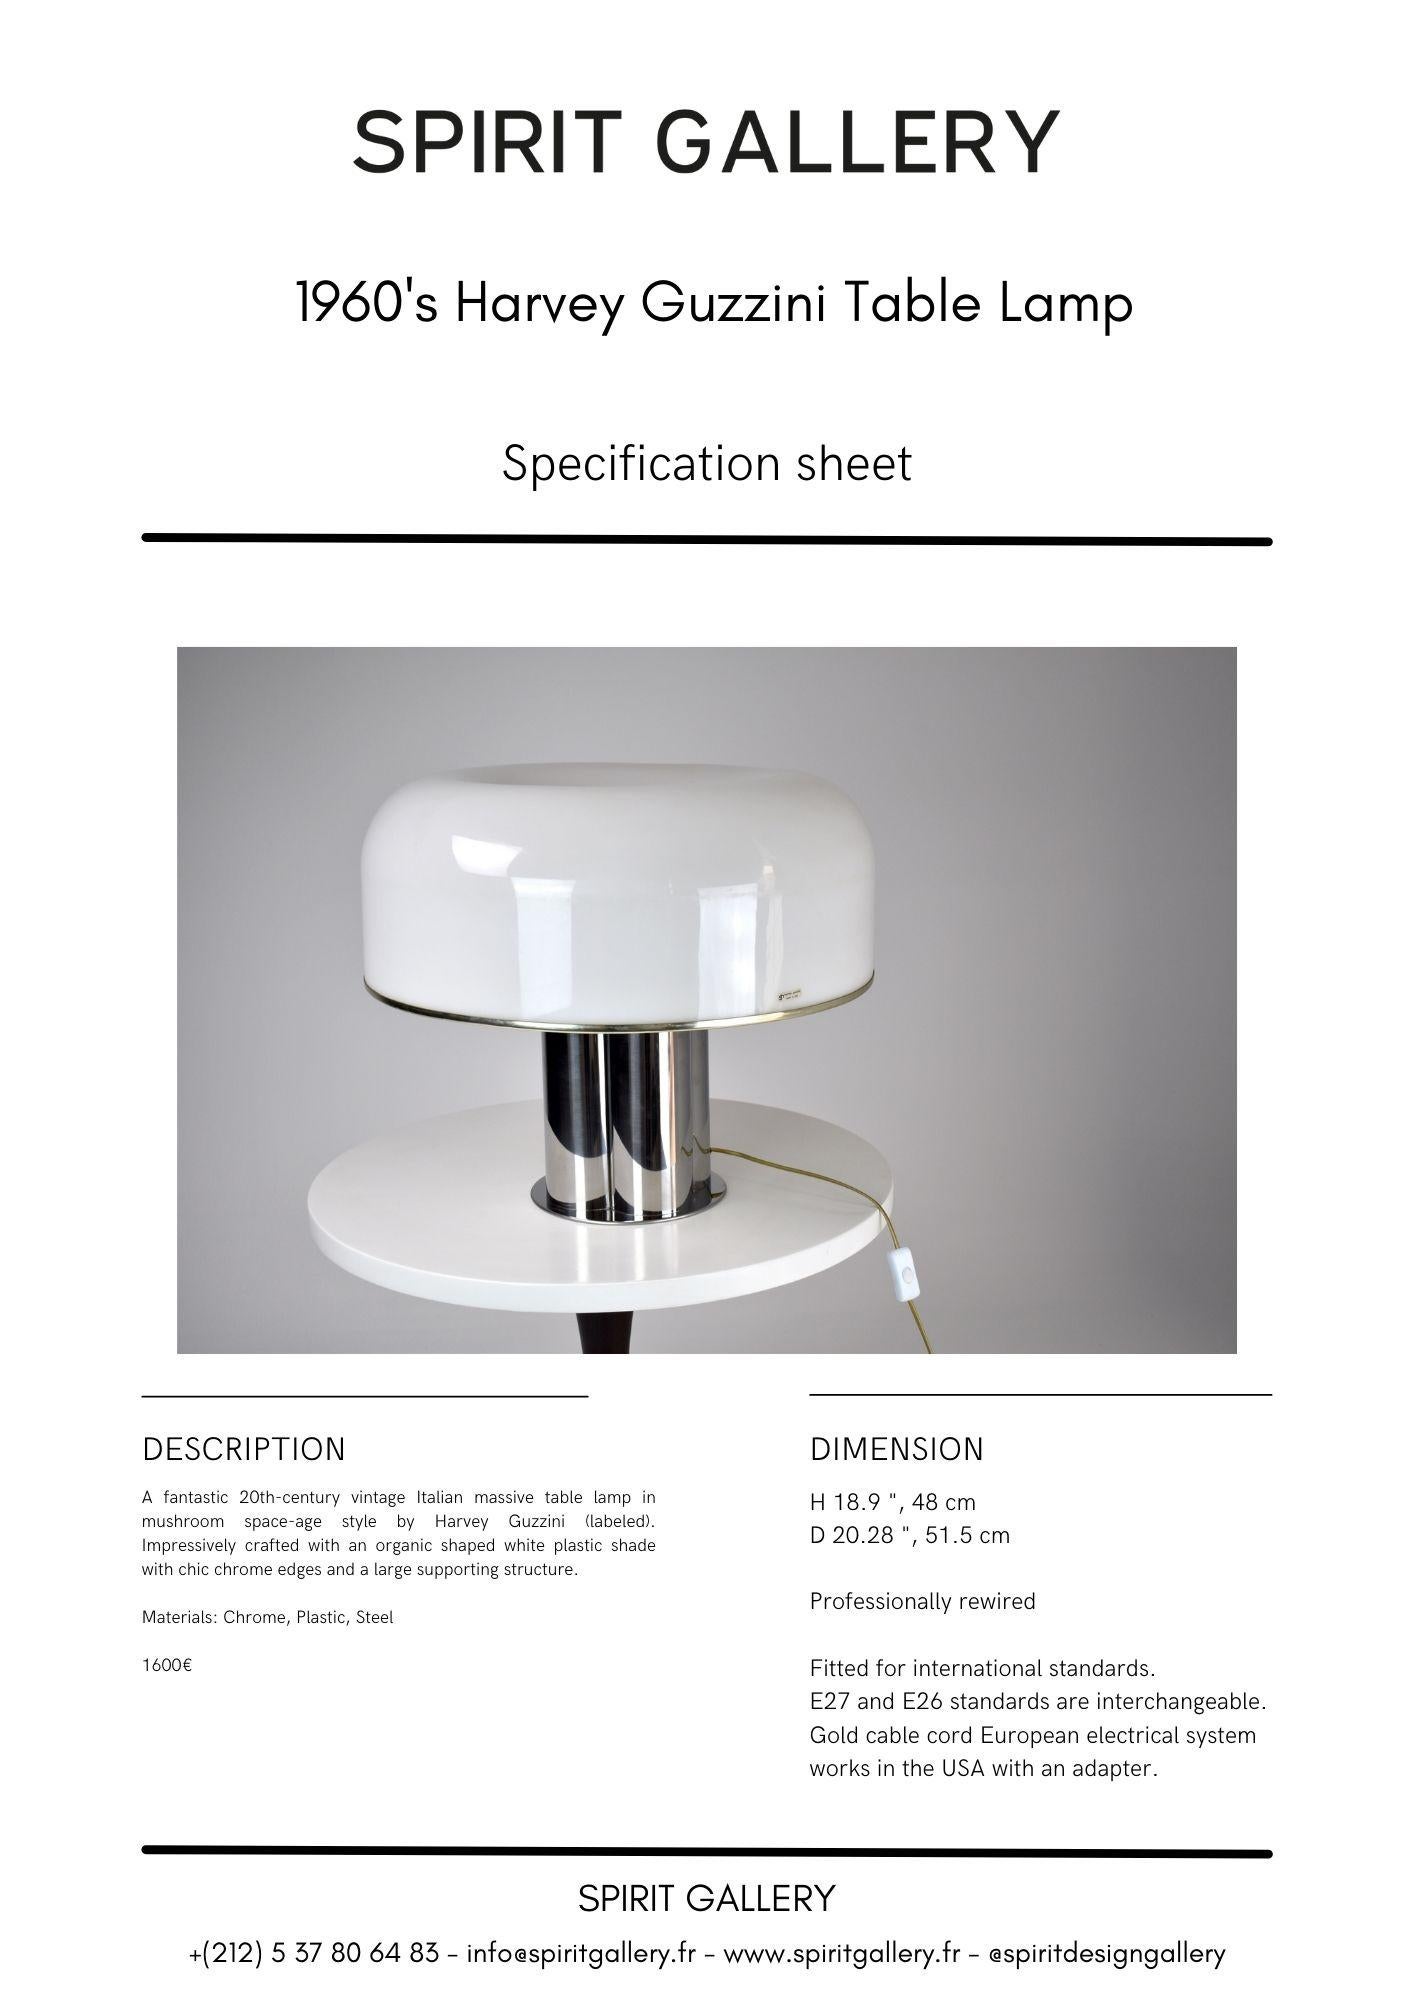 Large 1960's Italian Harvery Guzzini Table Lamp 14